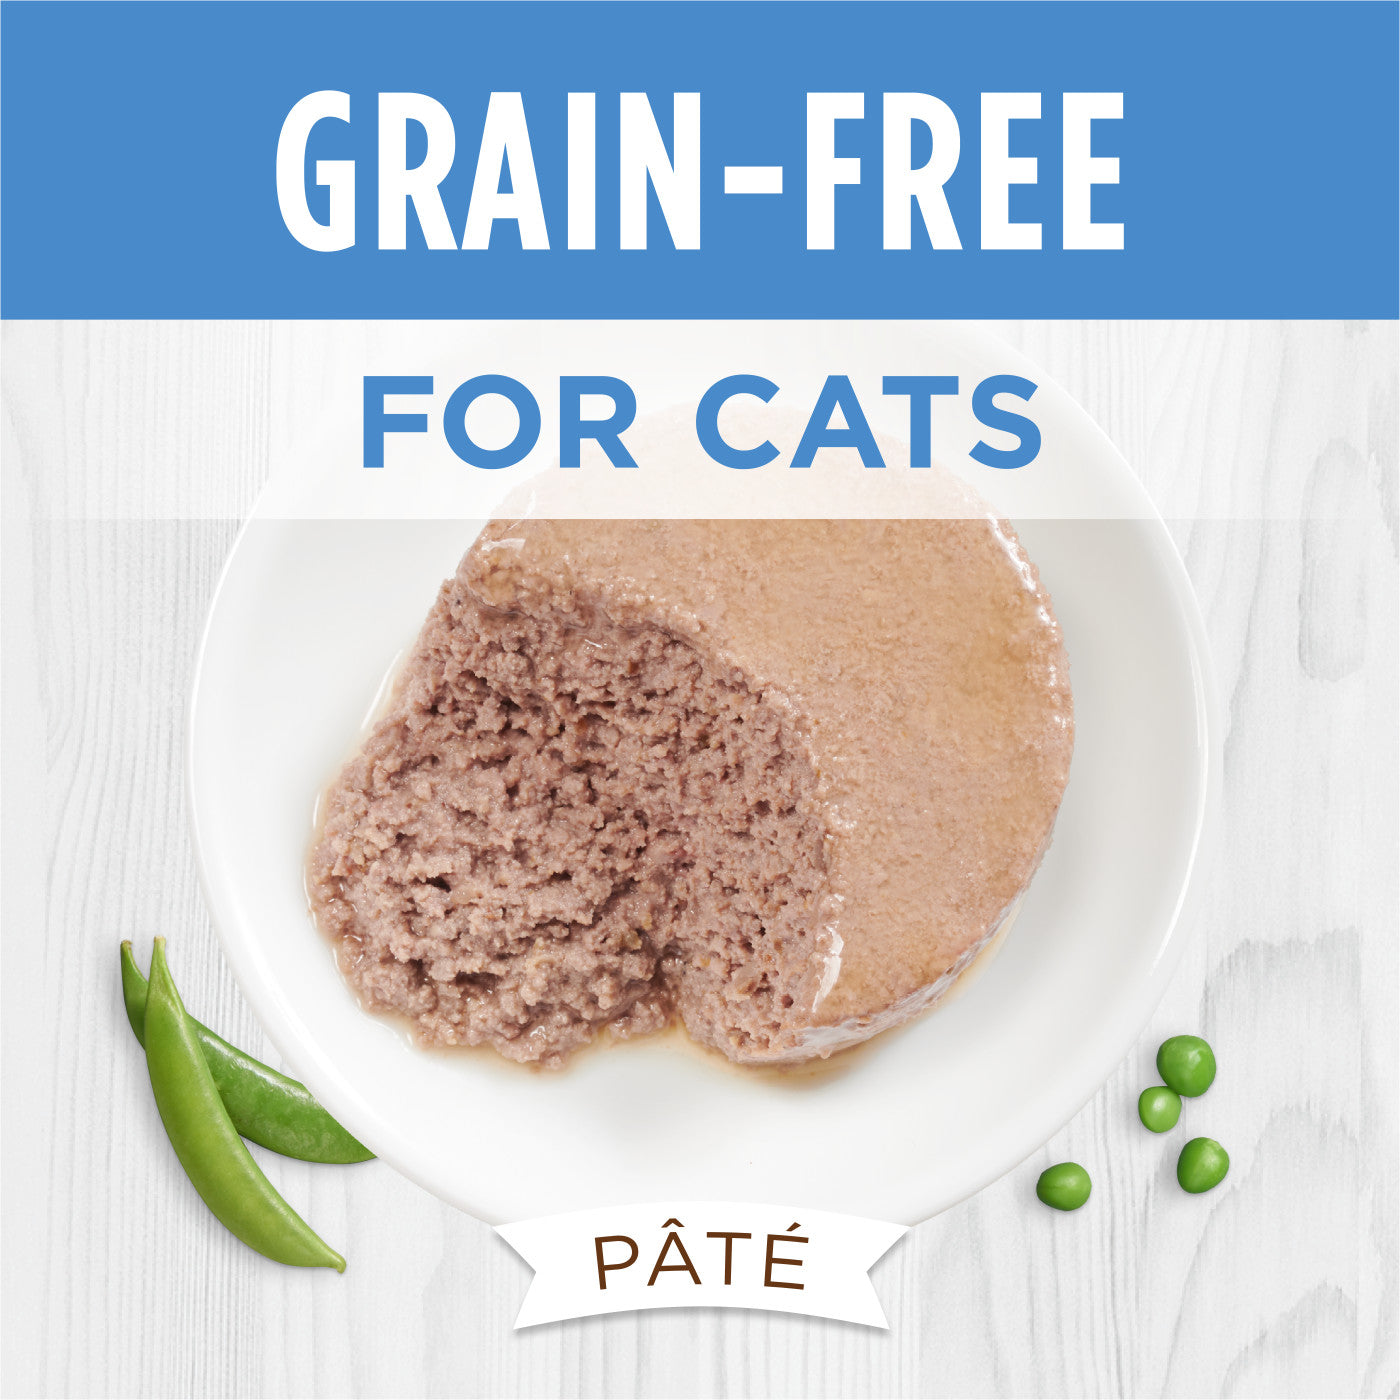 Instinct - Limited Ingredient Diet - Real Turkey Recipe (Wet Cat Food)